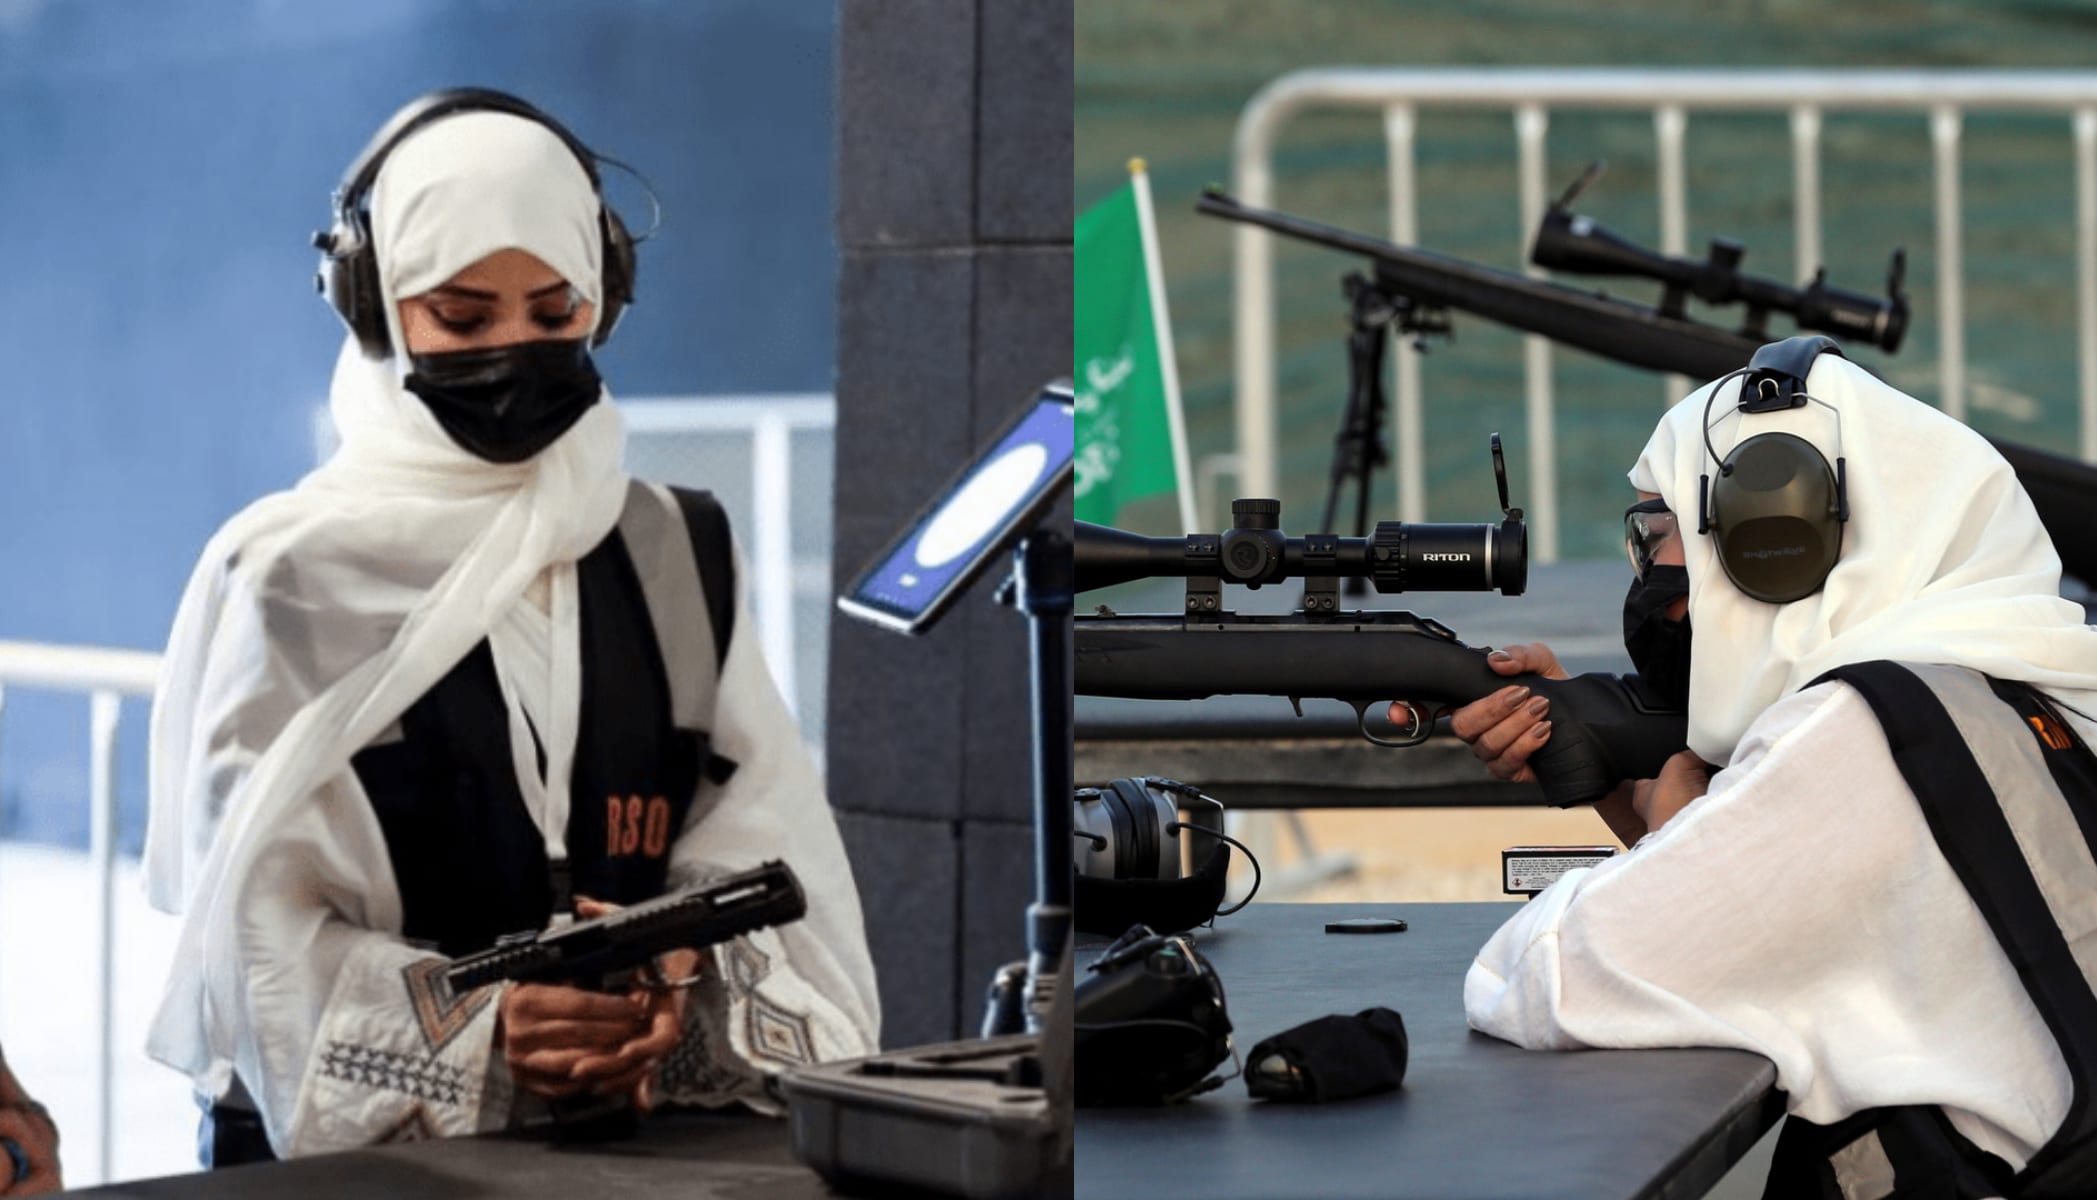 سيدات في المملكة العربية السعودية يتجهن لـ هوايات غير تقليدية كانت محرمة في السابق watanserb.com